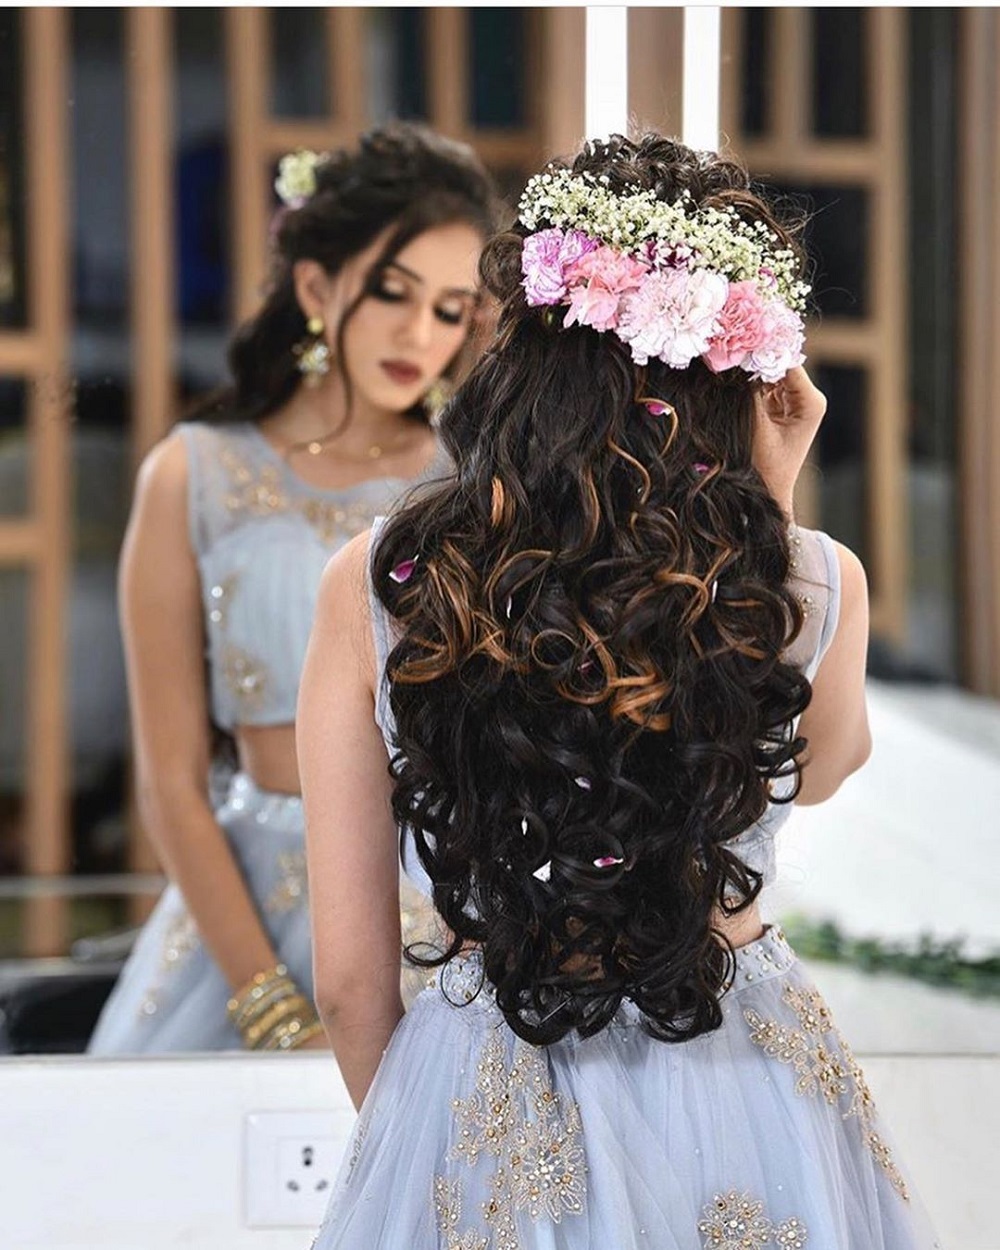 The Best Hairstyles by Wedding Dress Neckline